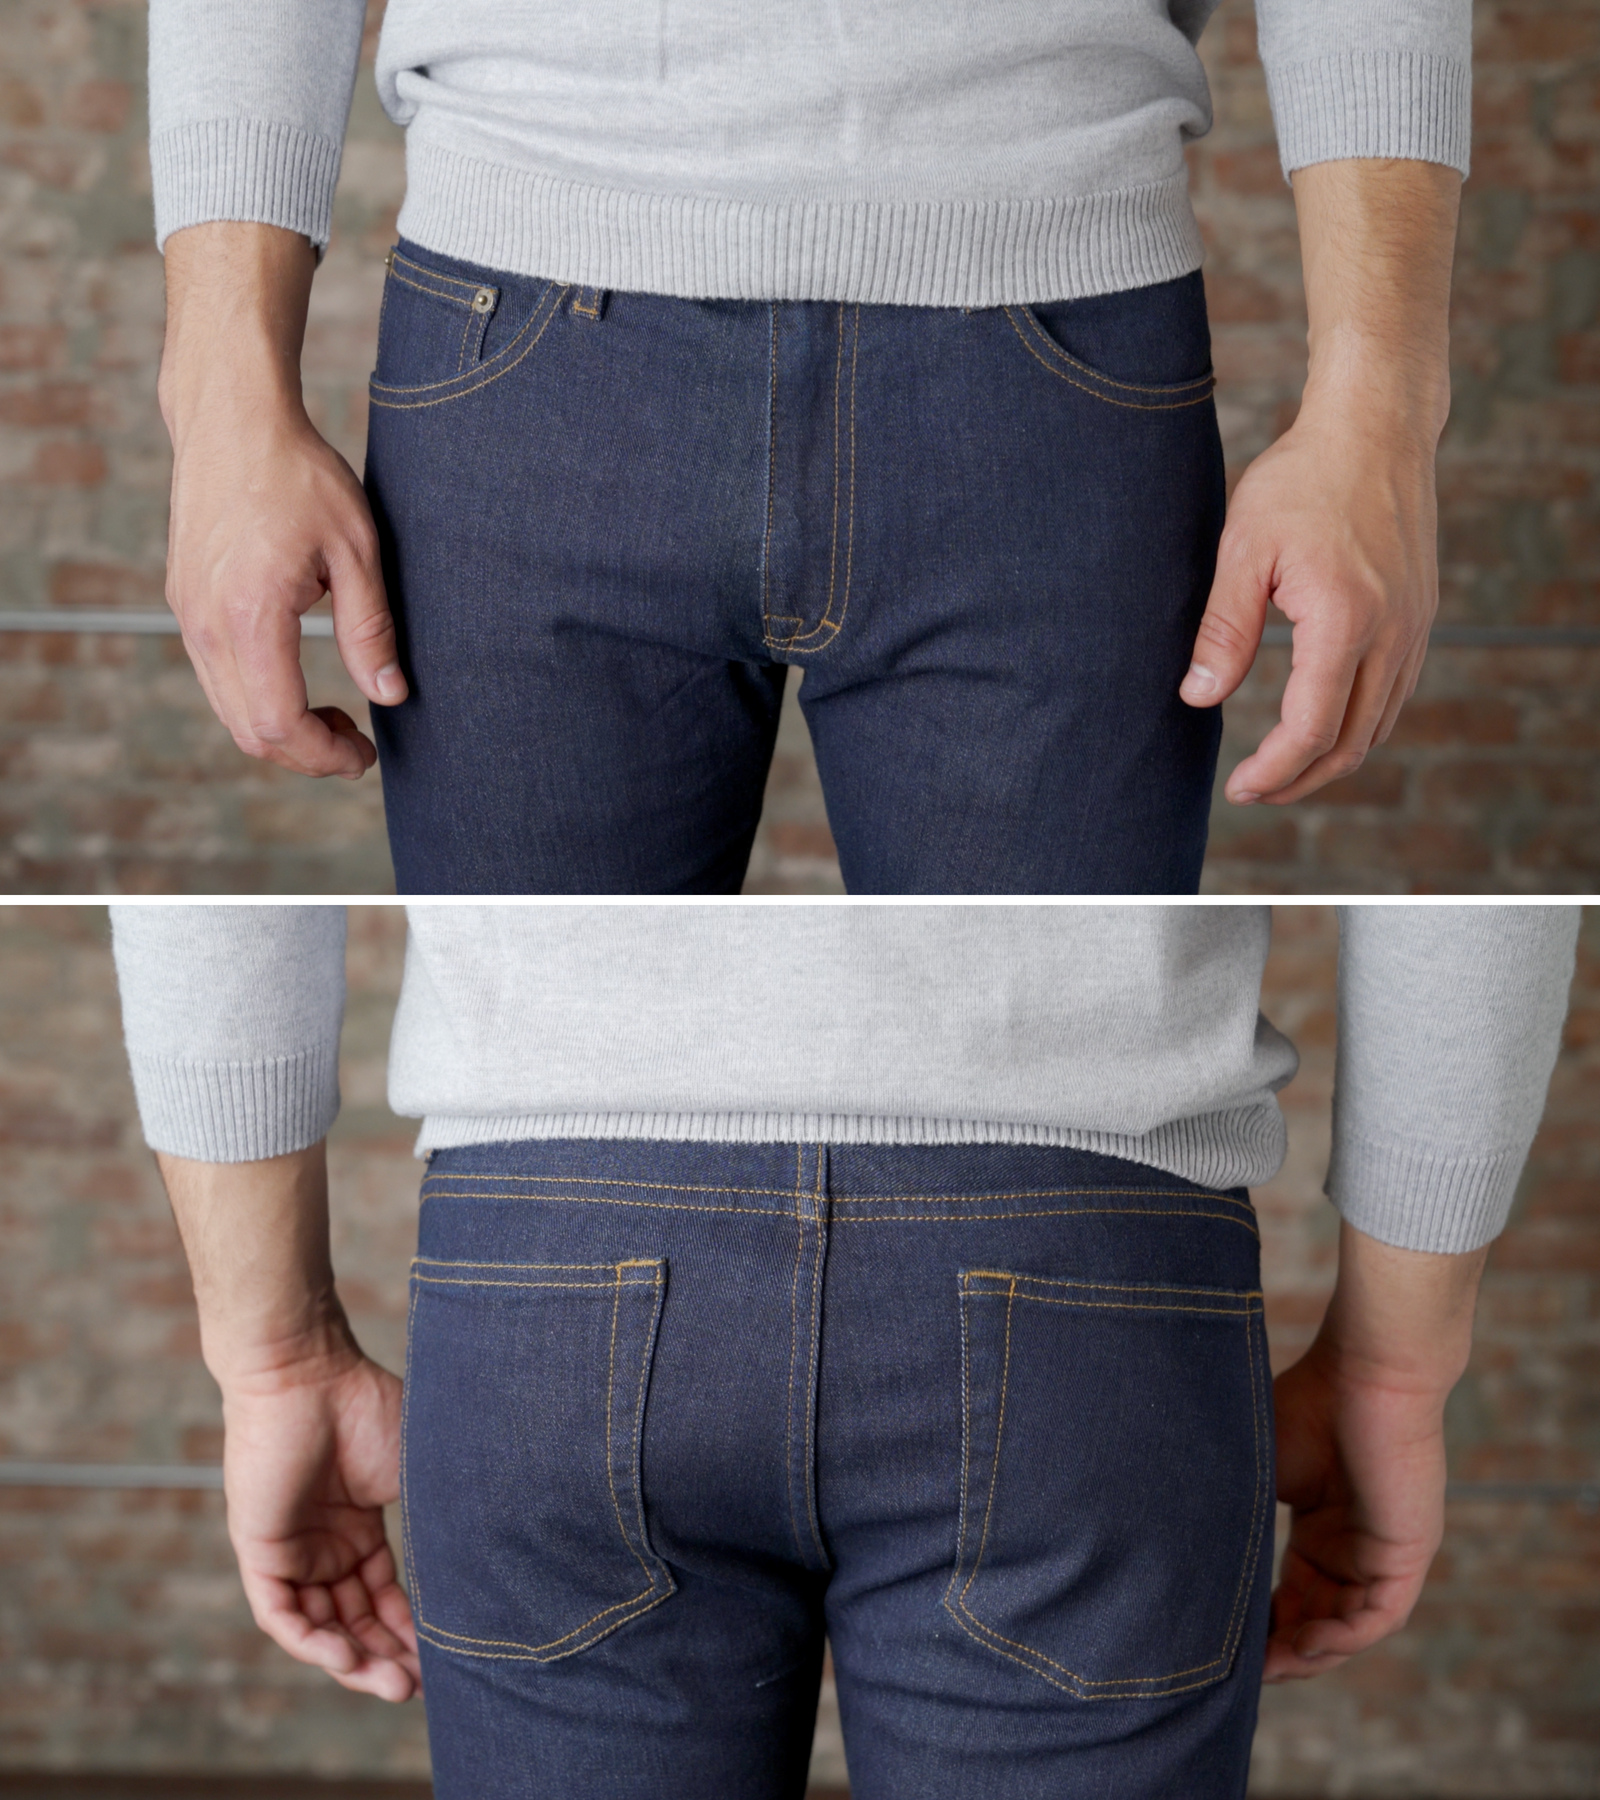 short rise jeans for men